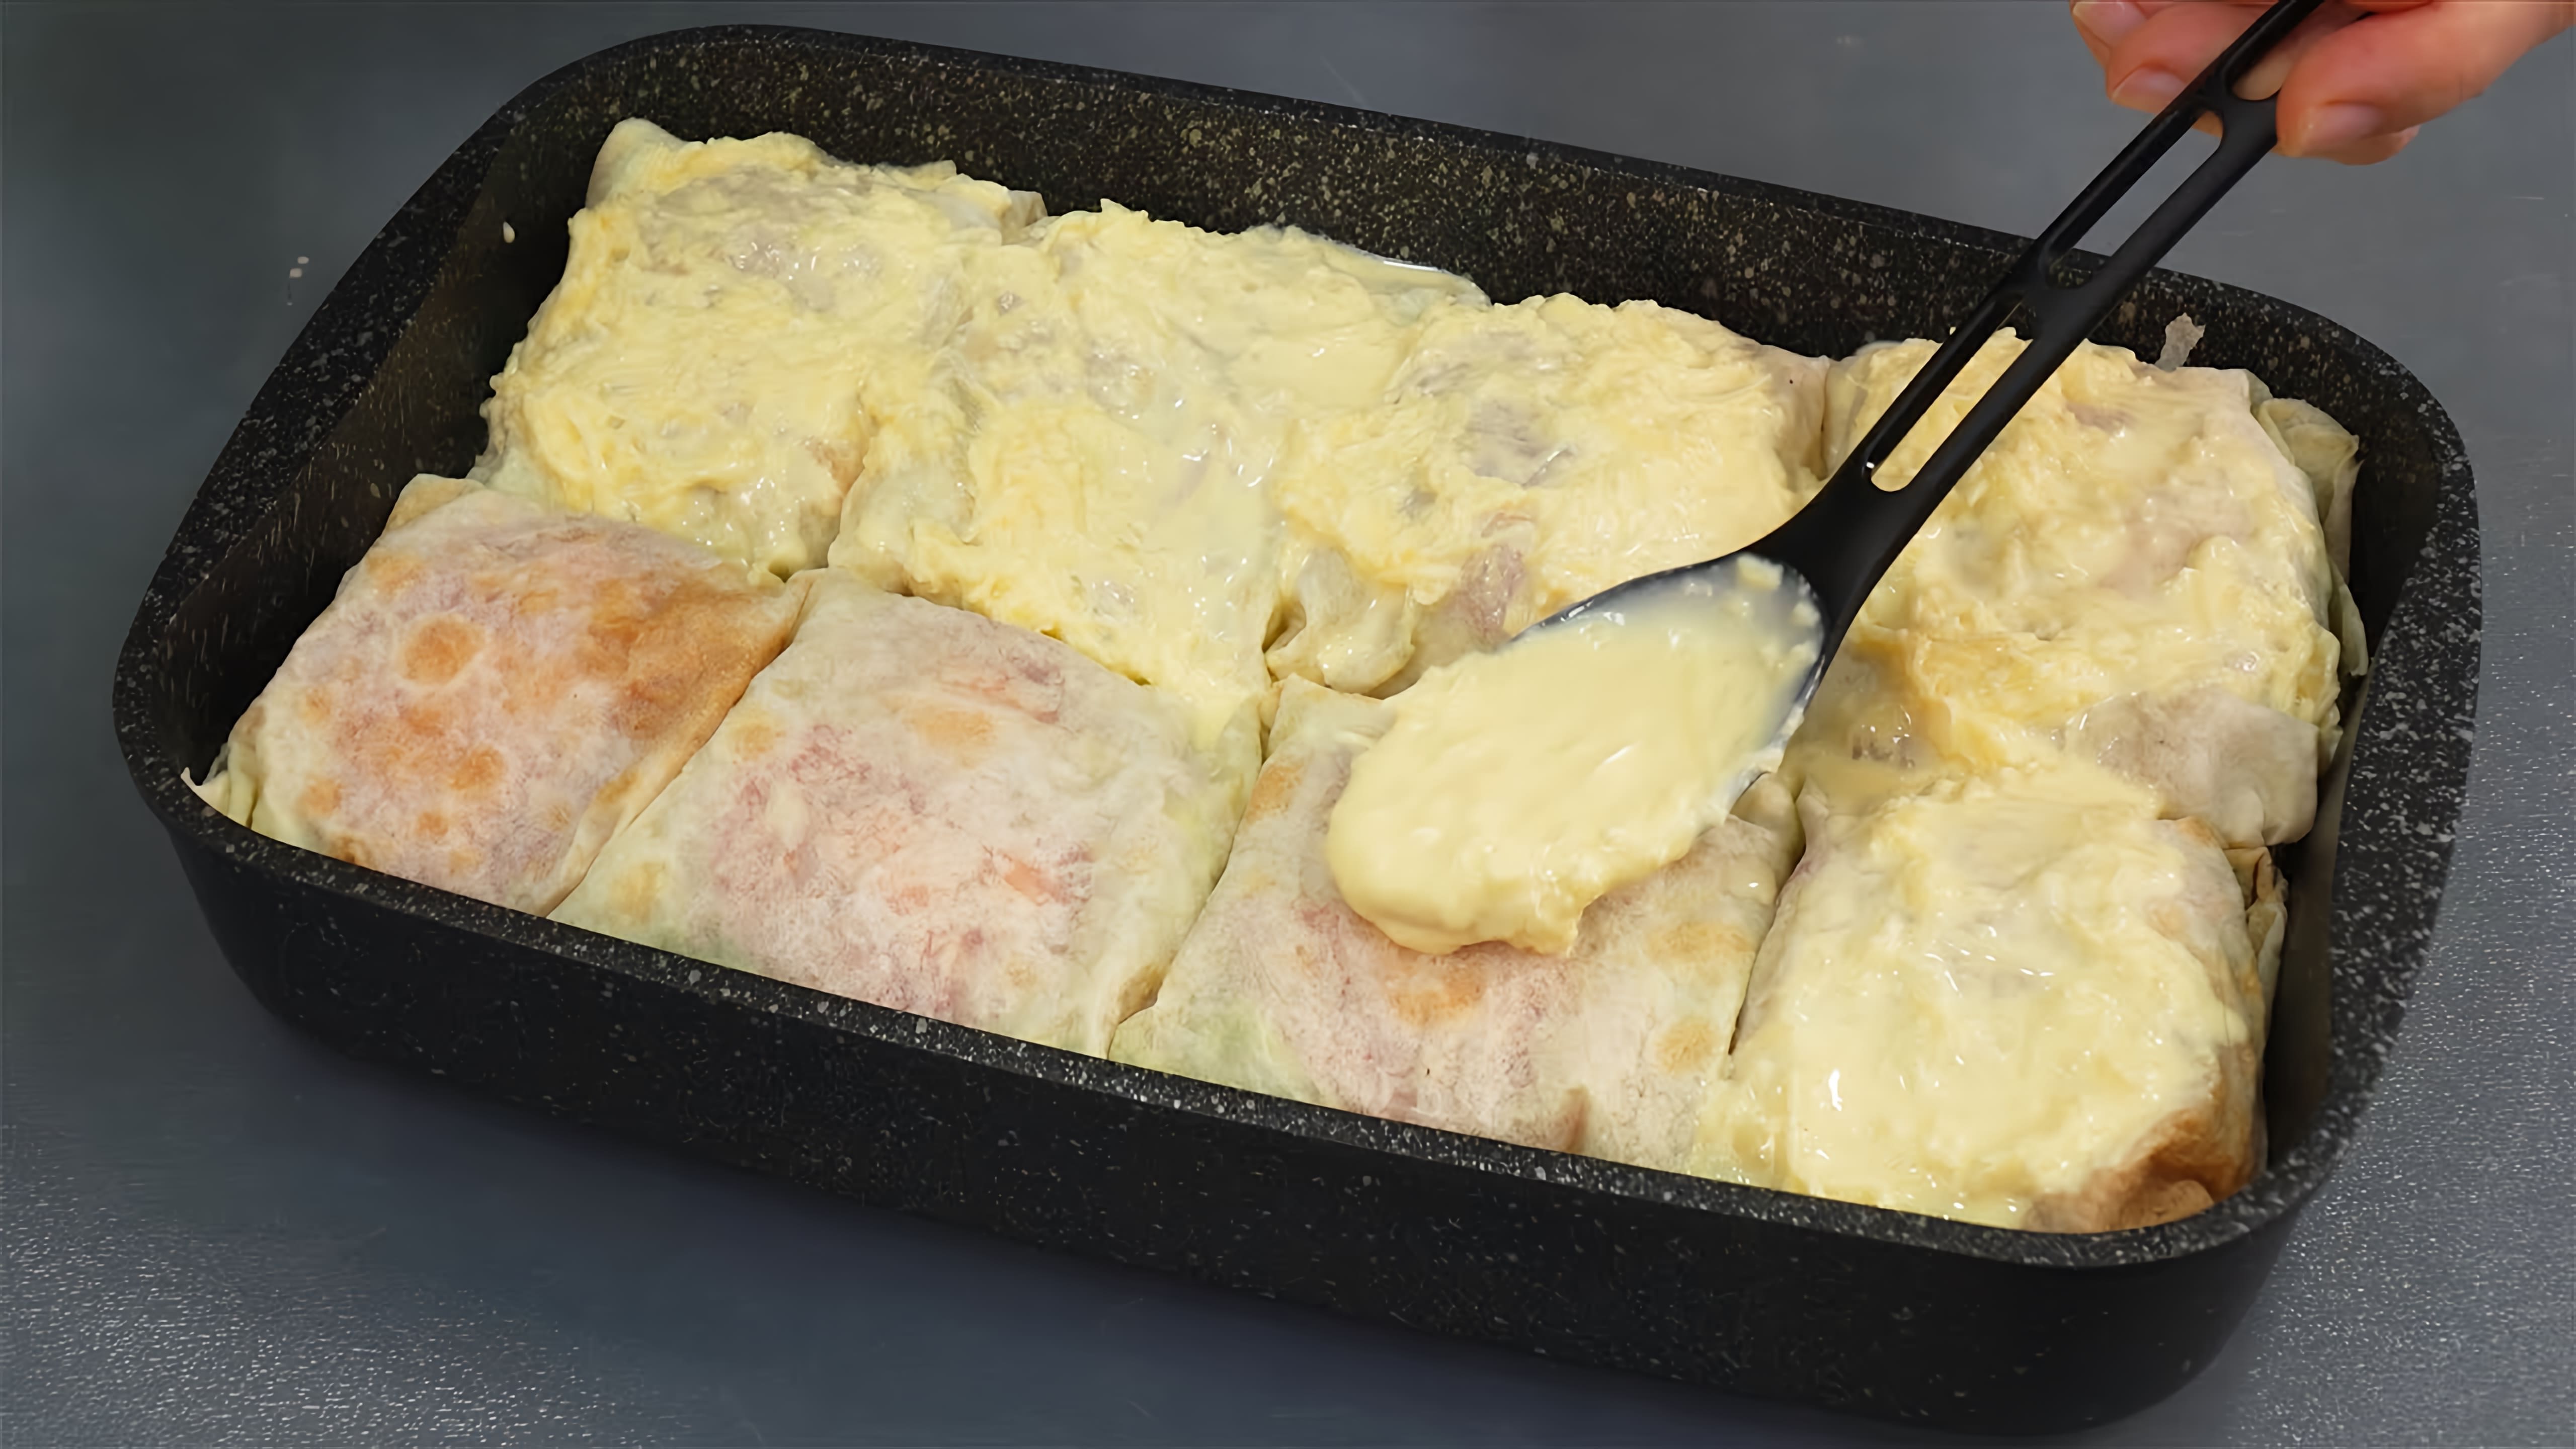 Видео рецепт рыбы в лаваше - блюда, в котором кусочки рыбы заворачиваются в лепешку вместе с помидорами, соусом и луком, затем запекаются